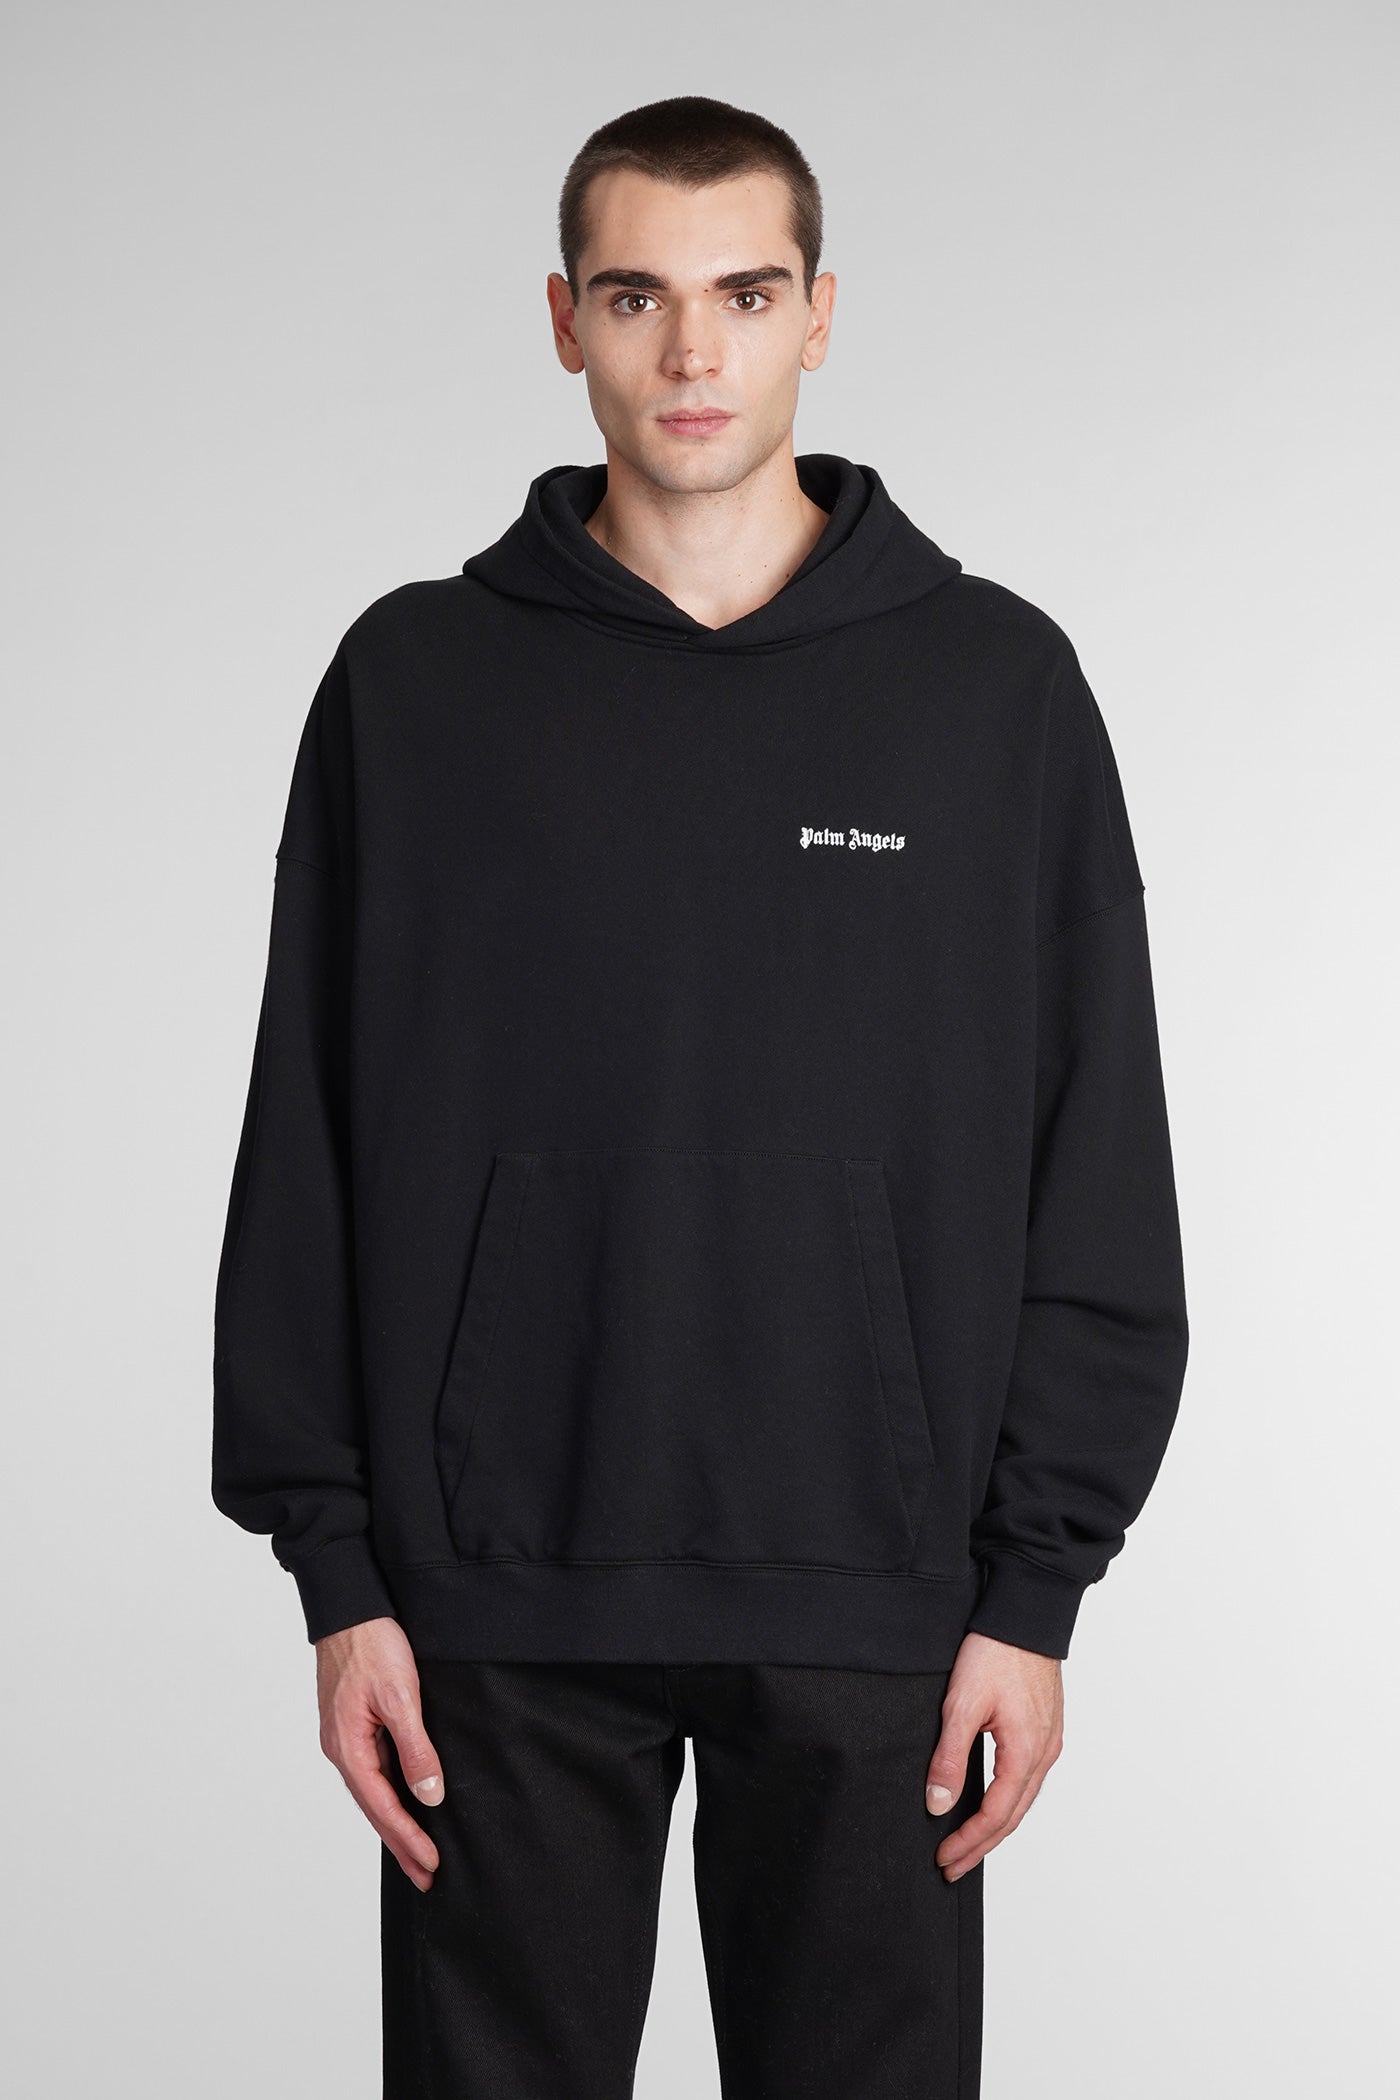 Palm Angels - Sweatshirt in black cotton